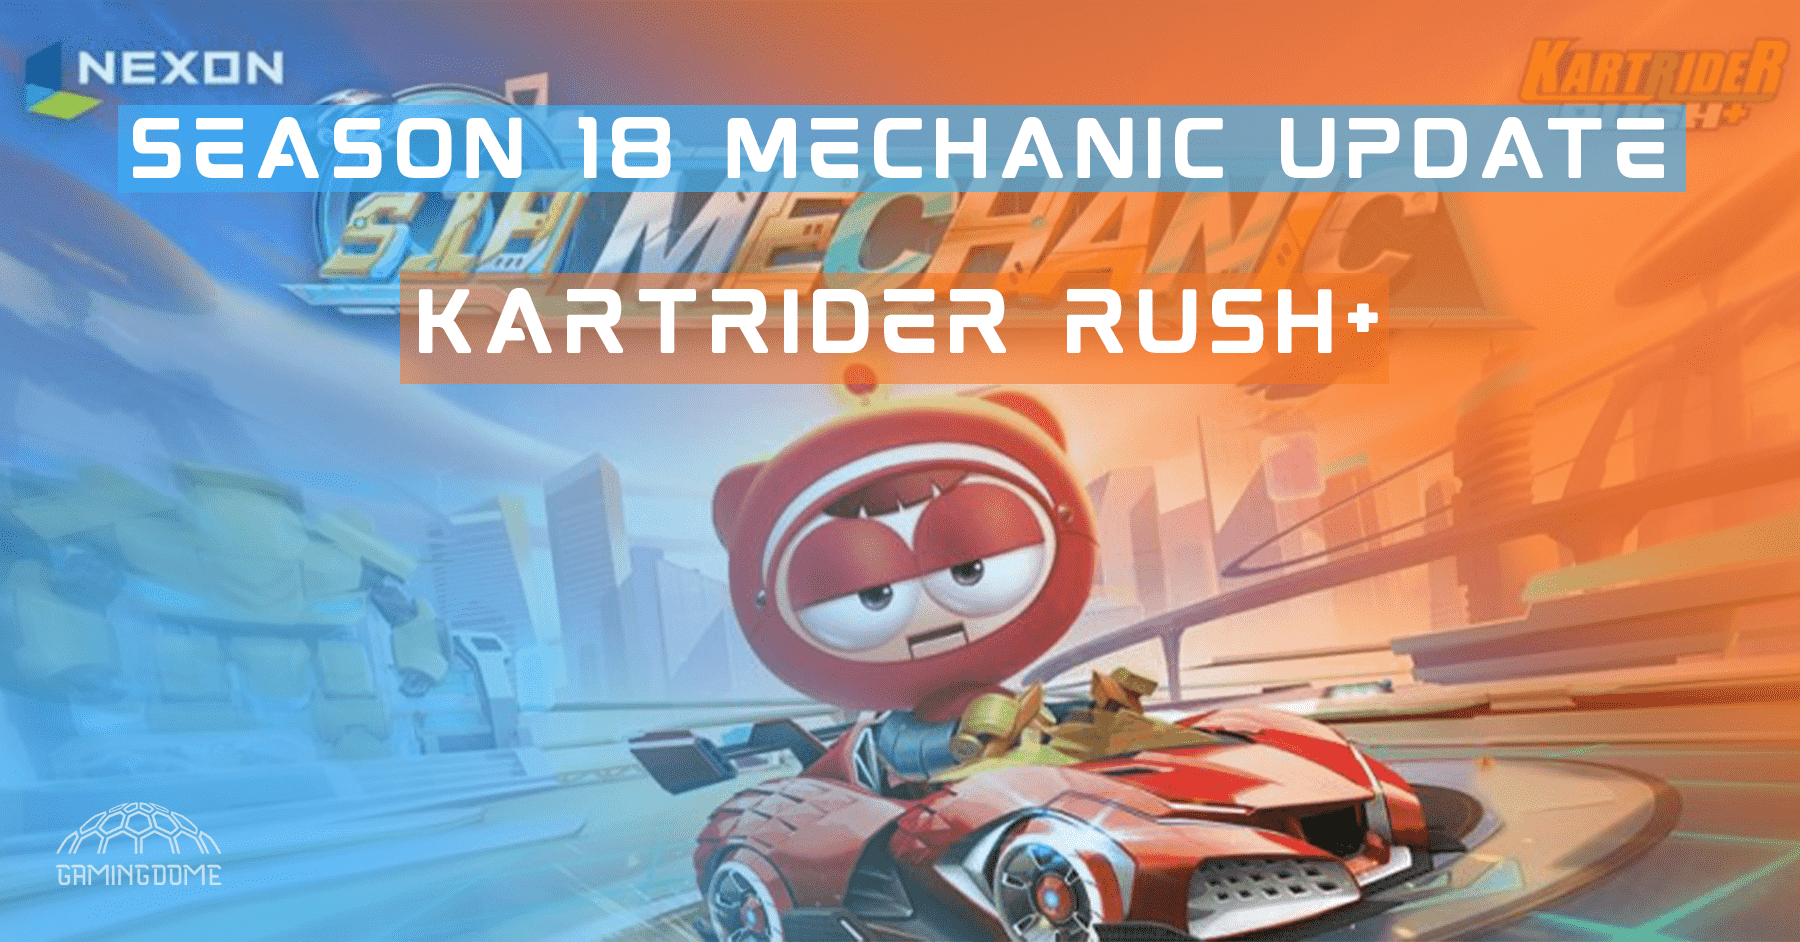 KartRider Rush+ Season 18 Mechanic Update